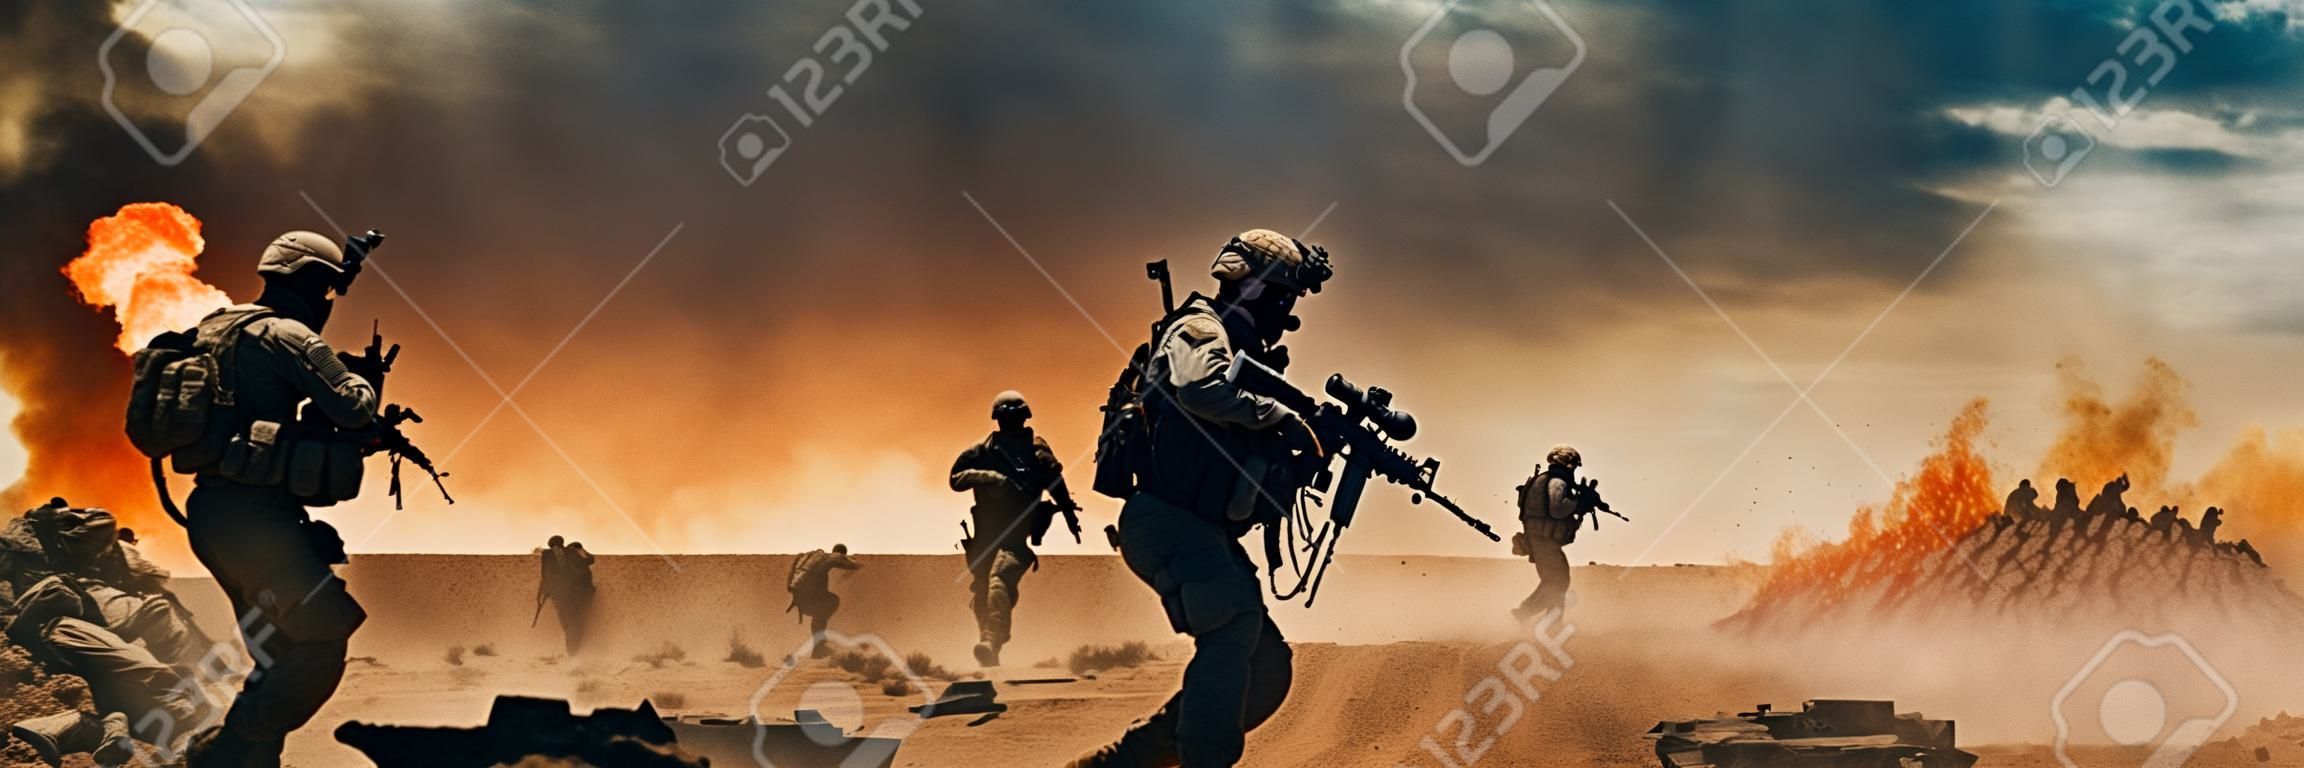 Forces spéciales dans une zone de guerre soldats des forces spéciales militaires traversant une zone de guerre détruite à travers le feu et la fumée dans le désert avec espace de copie